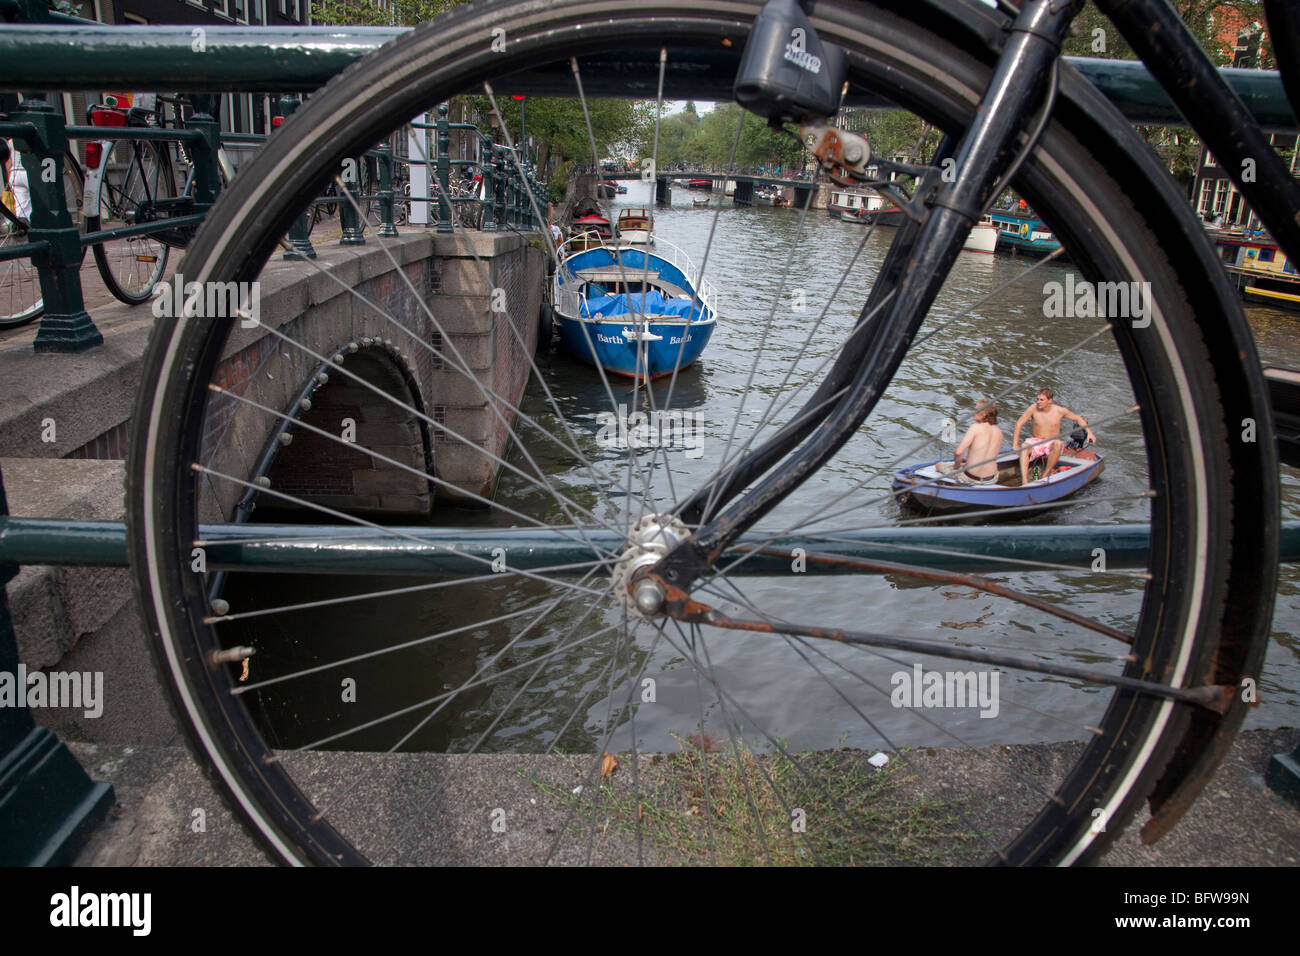 Amsterdam canal avec voile vue par roue de bicyclette Banque D'Images